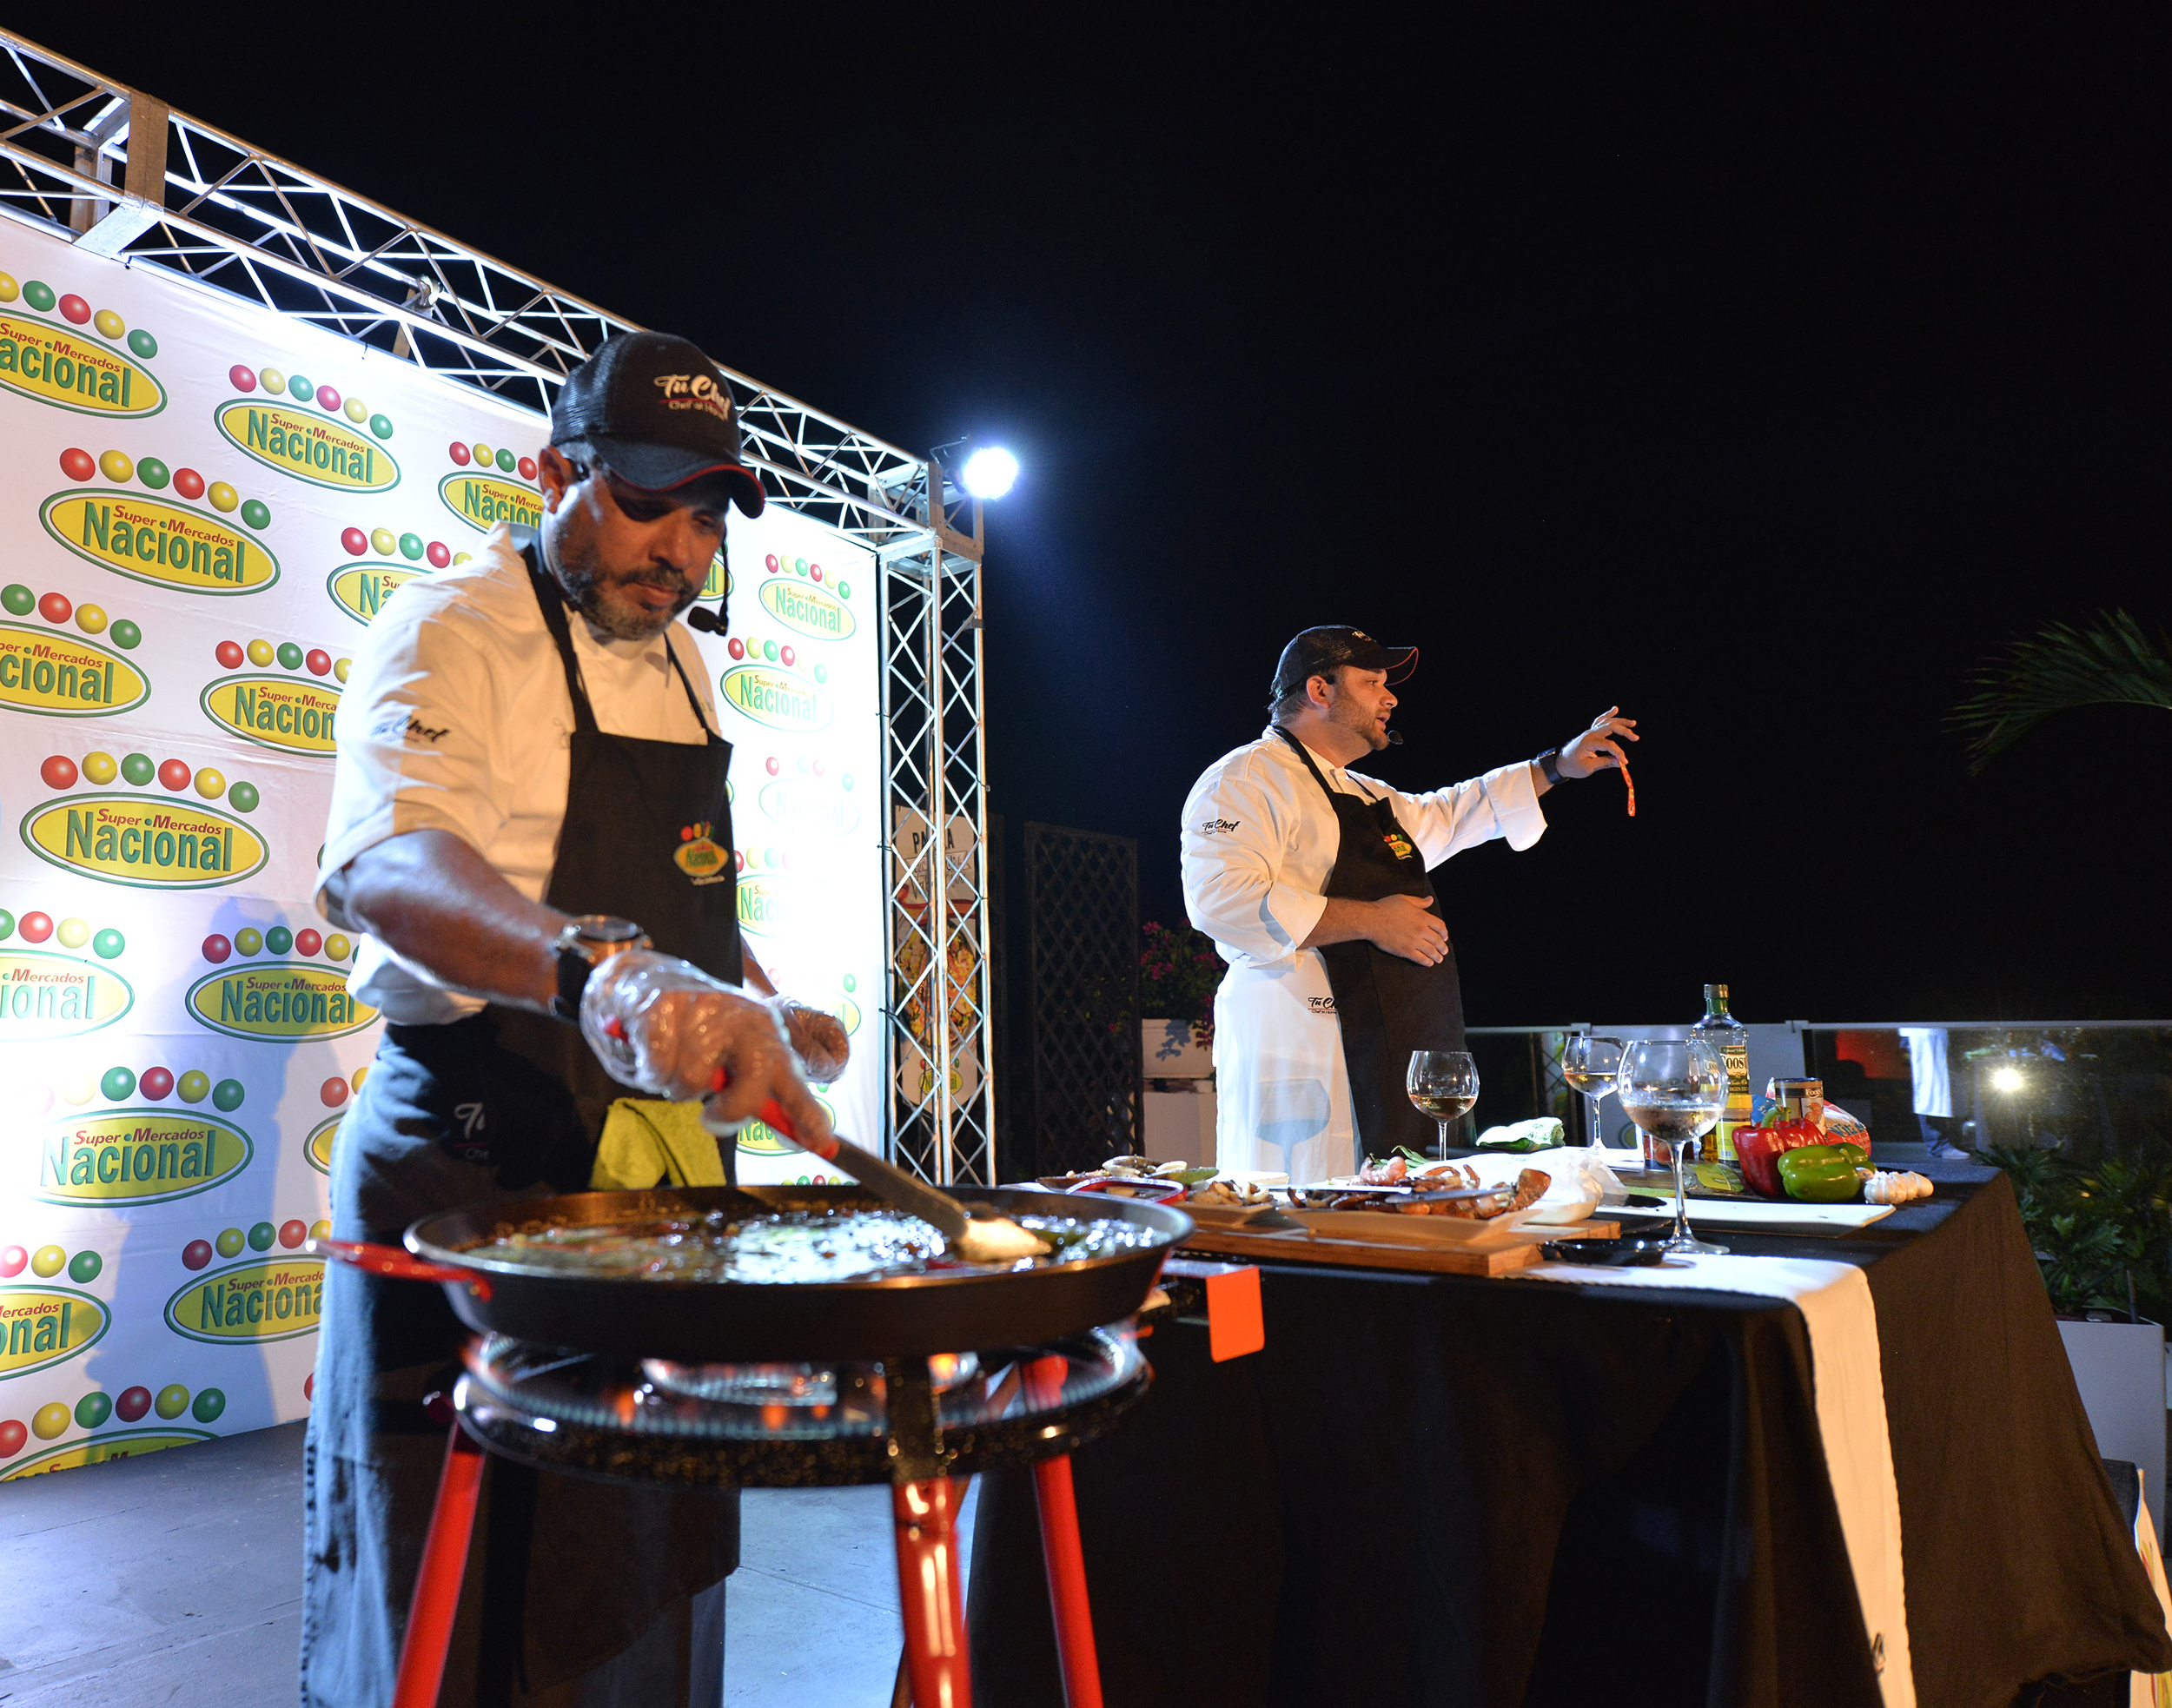  Supermercados Nacional deleita a clientes en  un cooking show de paellas con sabor a Valencia